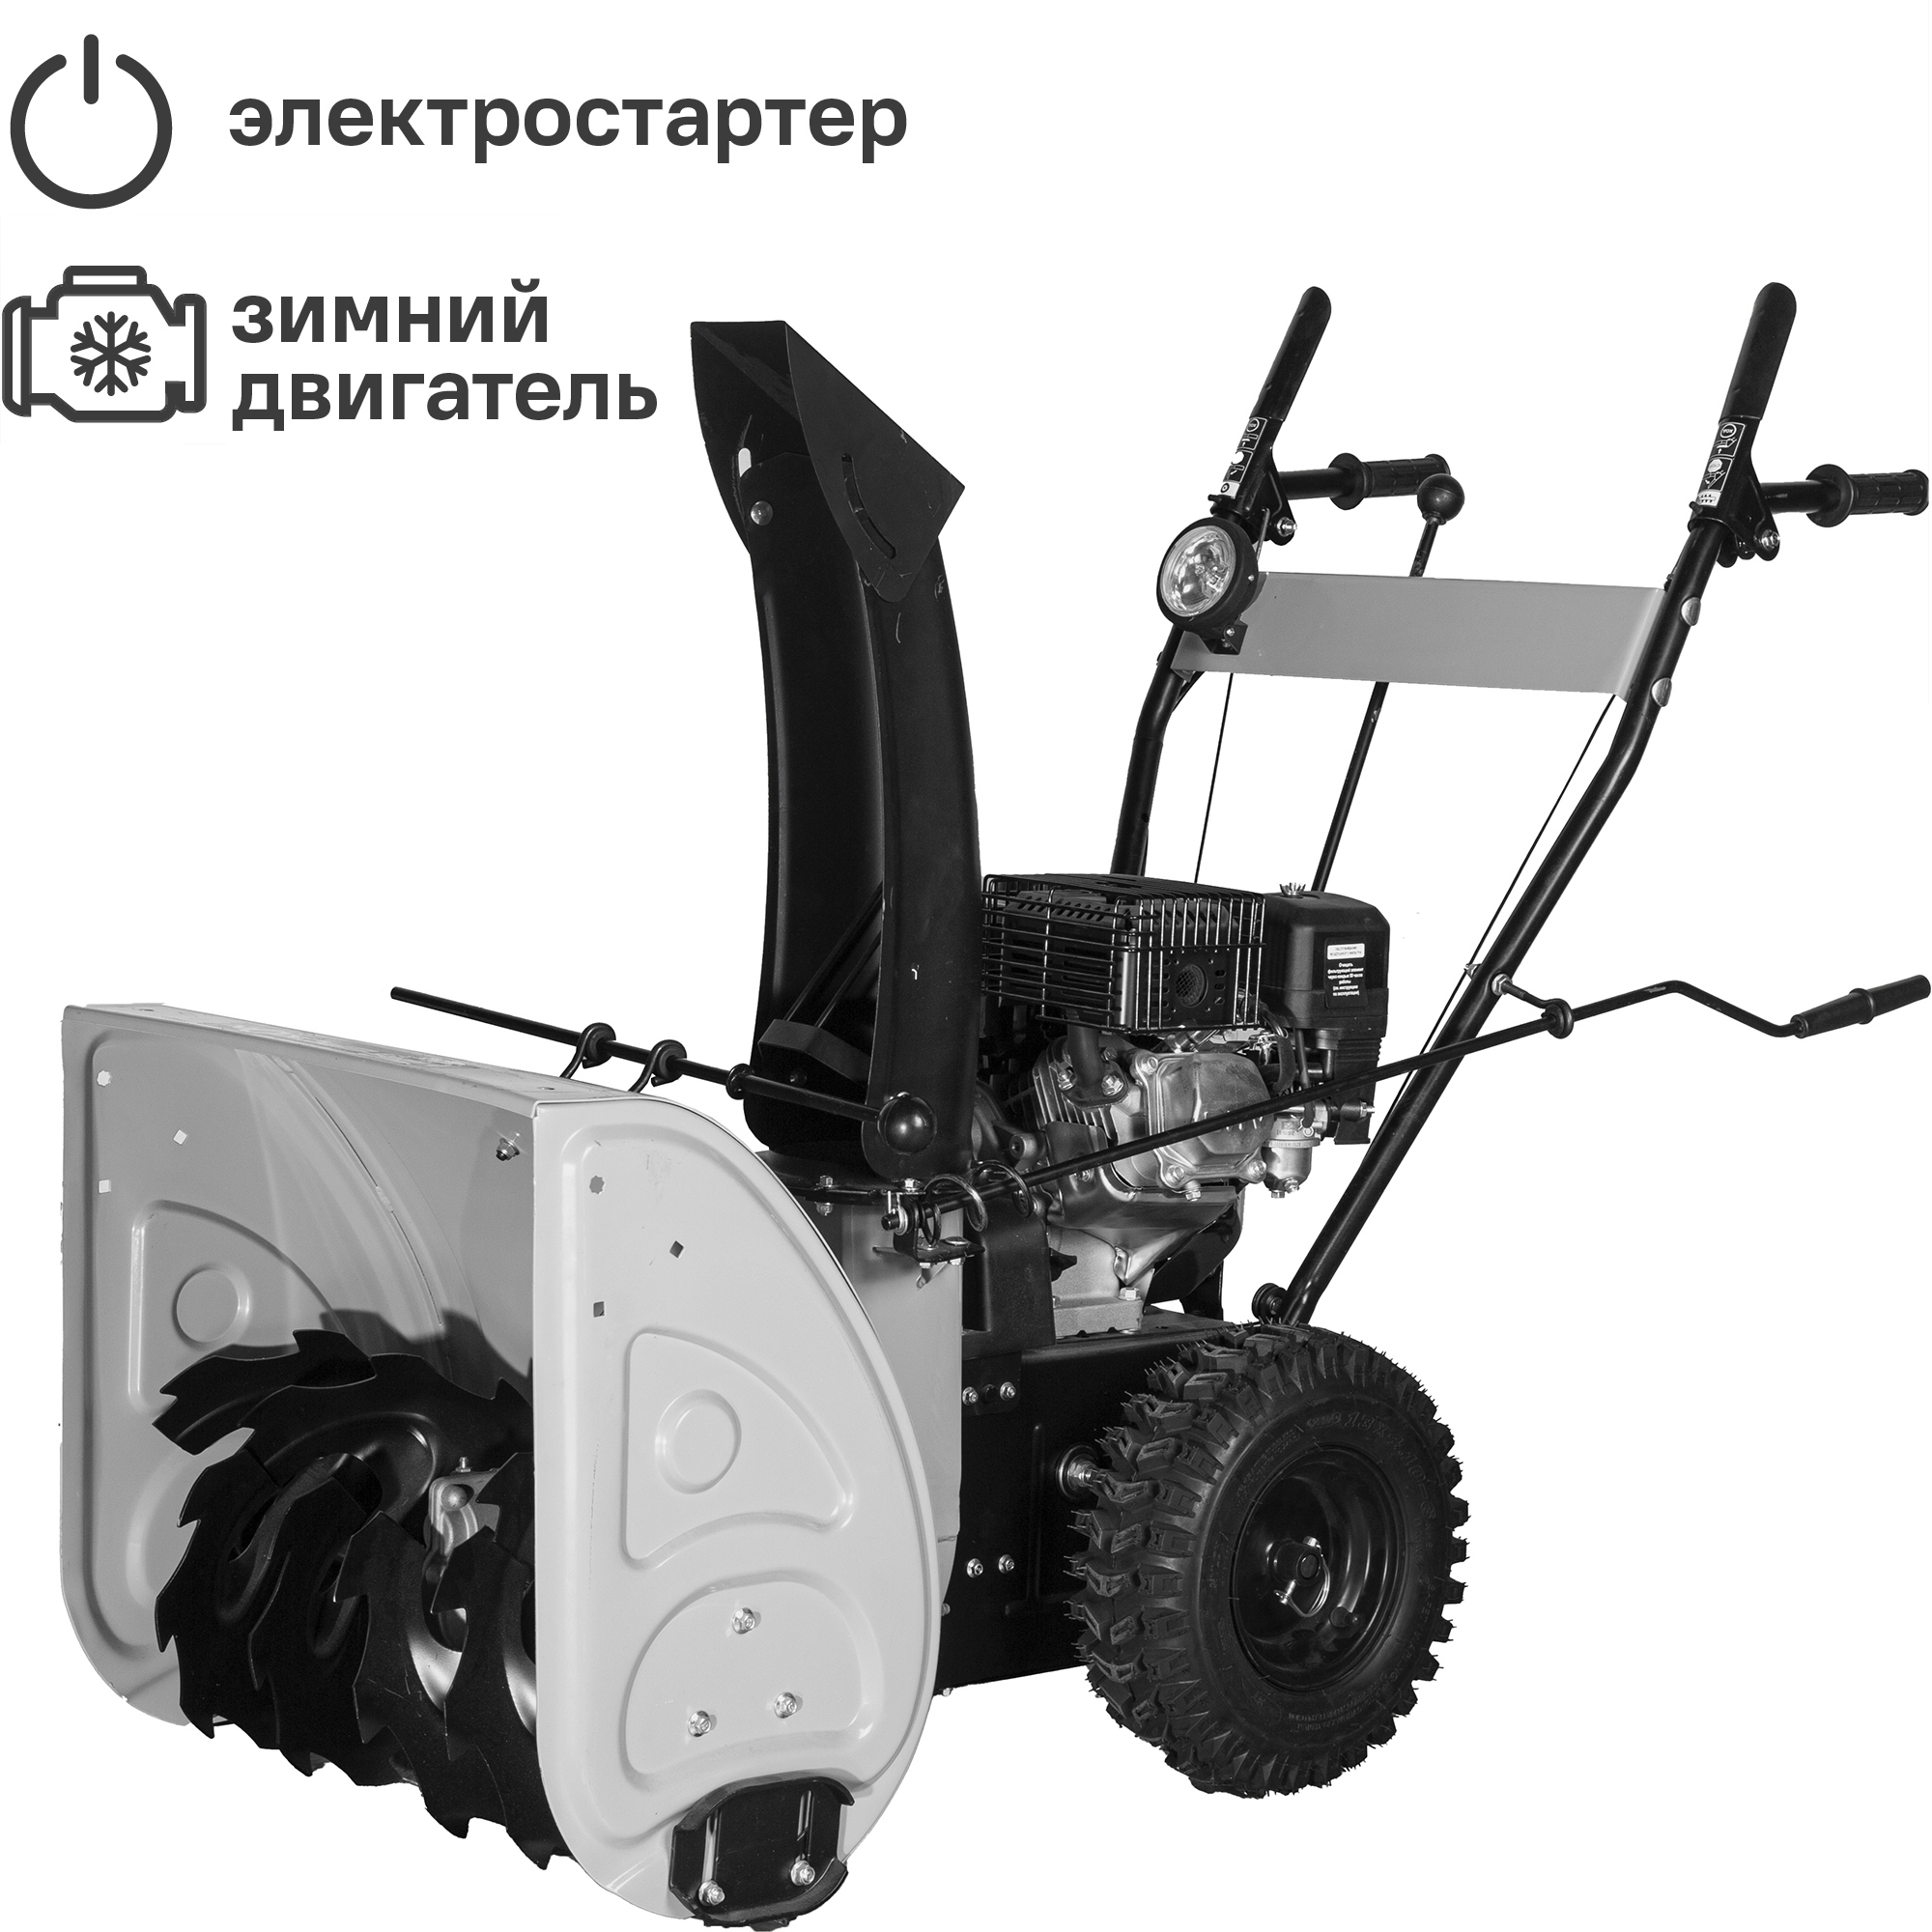 Снегоуборщик бензиновый Интерскол СМБ-650Э 56 см 6.5 л.с. по цене 21884 .